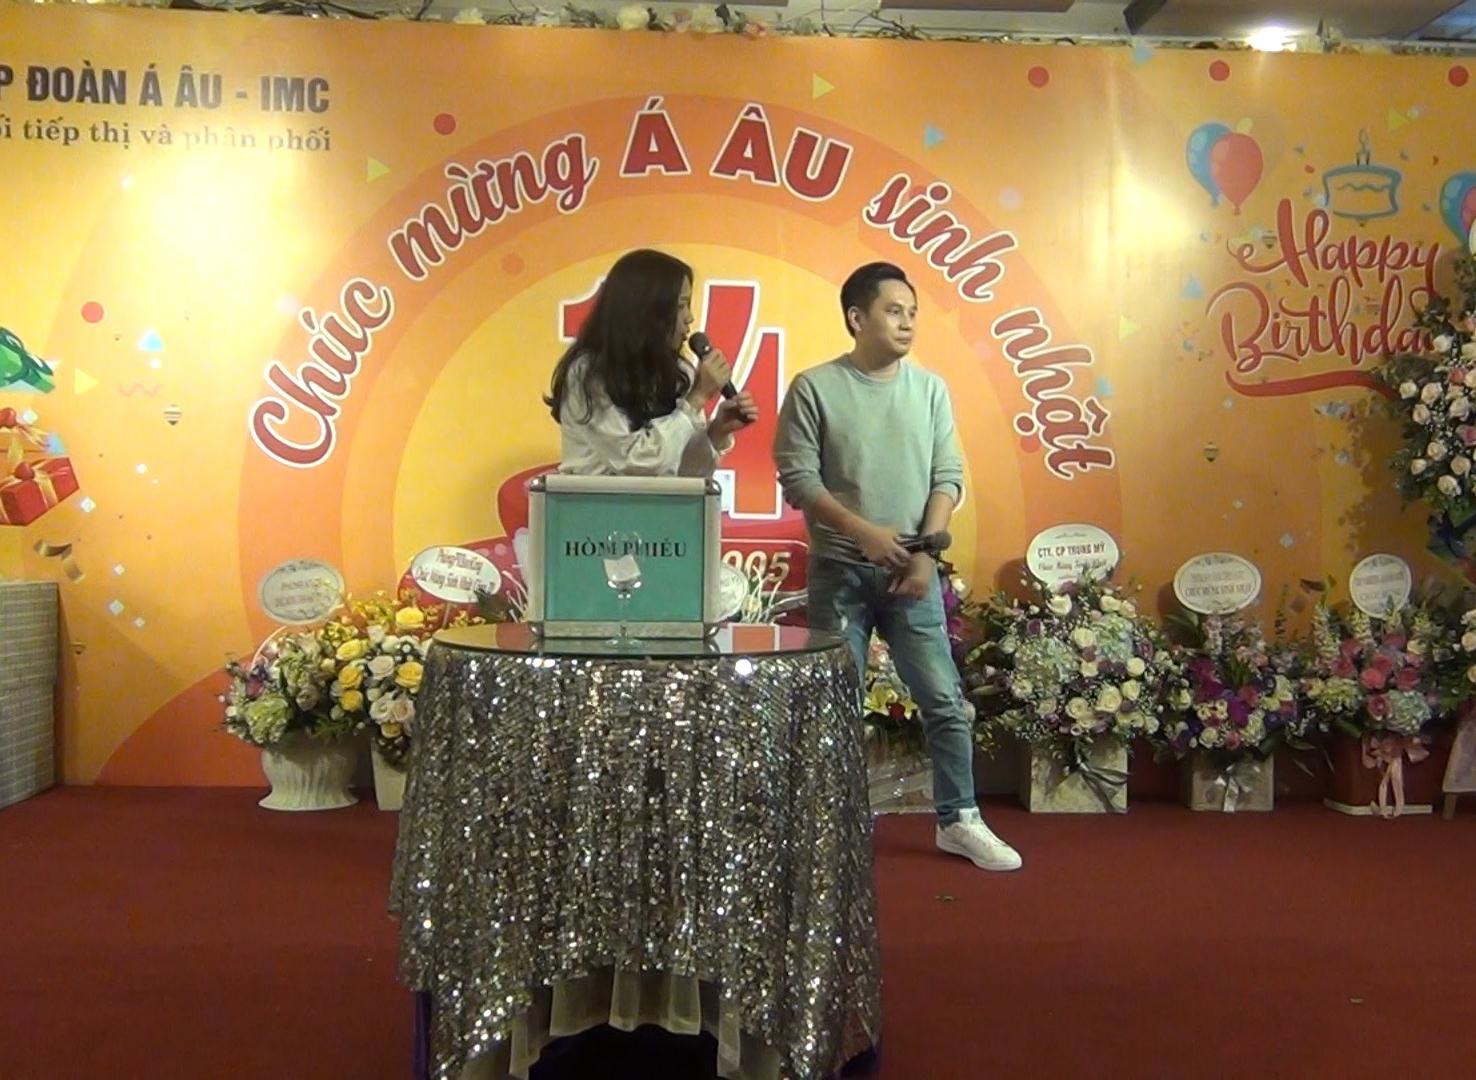 Ca khúc "Cơn mưa tình yêu" do Nguyễn Trường Sơn và Đỗ Kim Chi đến từ Công ty Đông Tây thể hiện